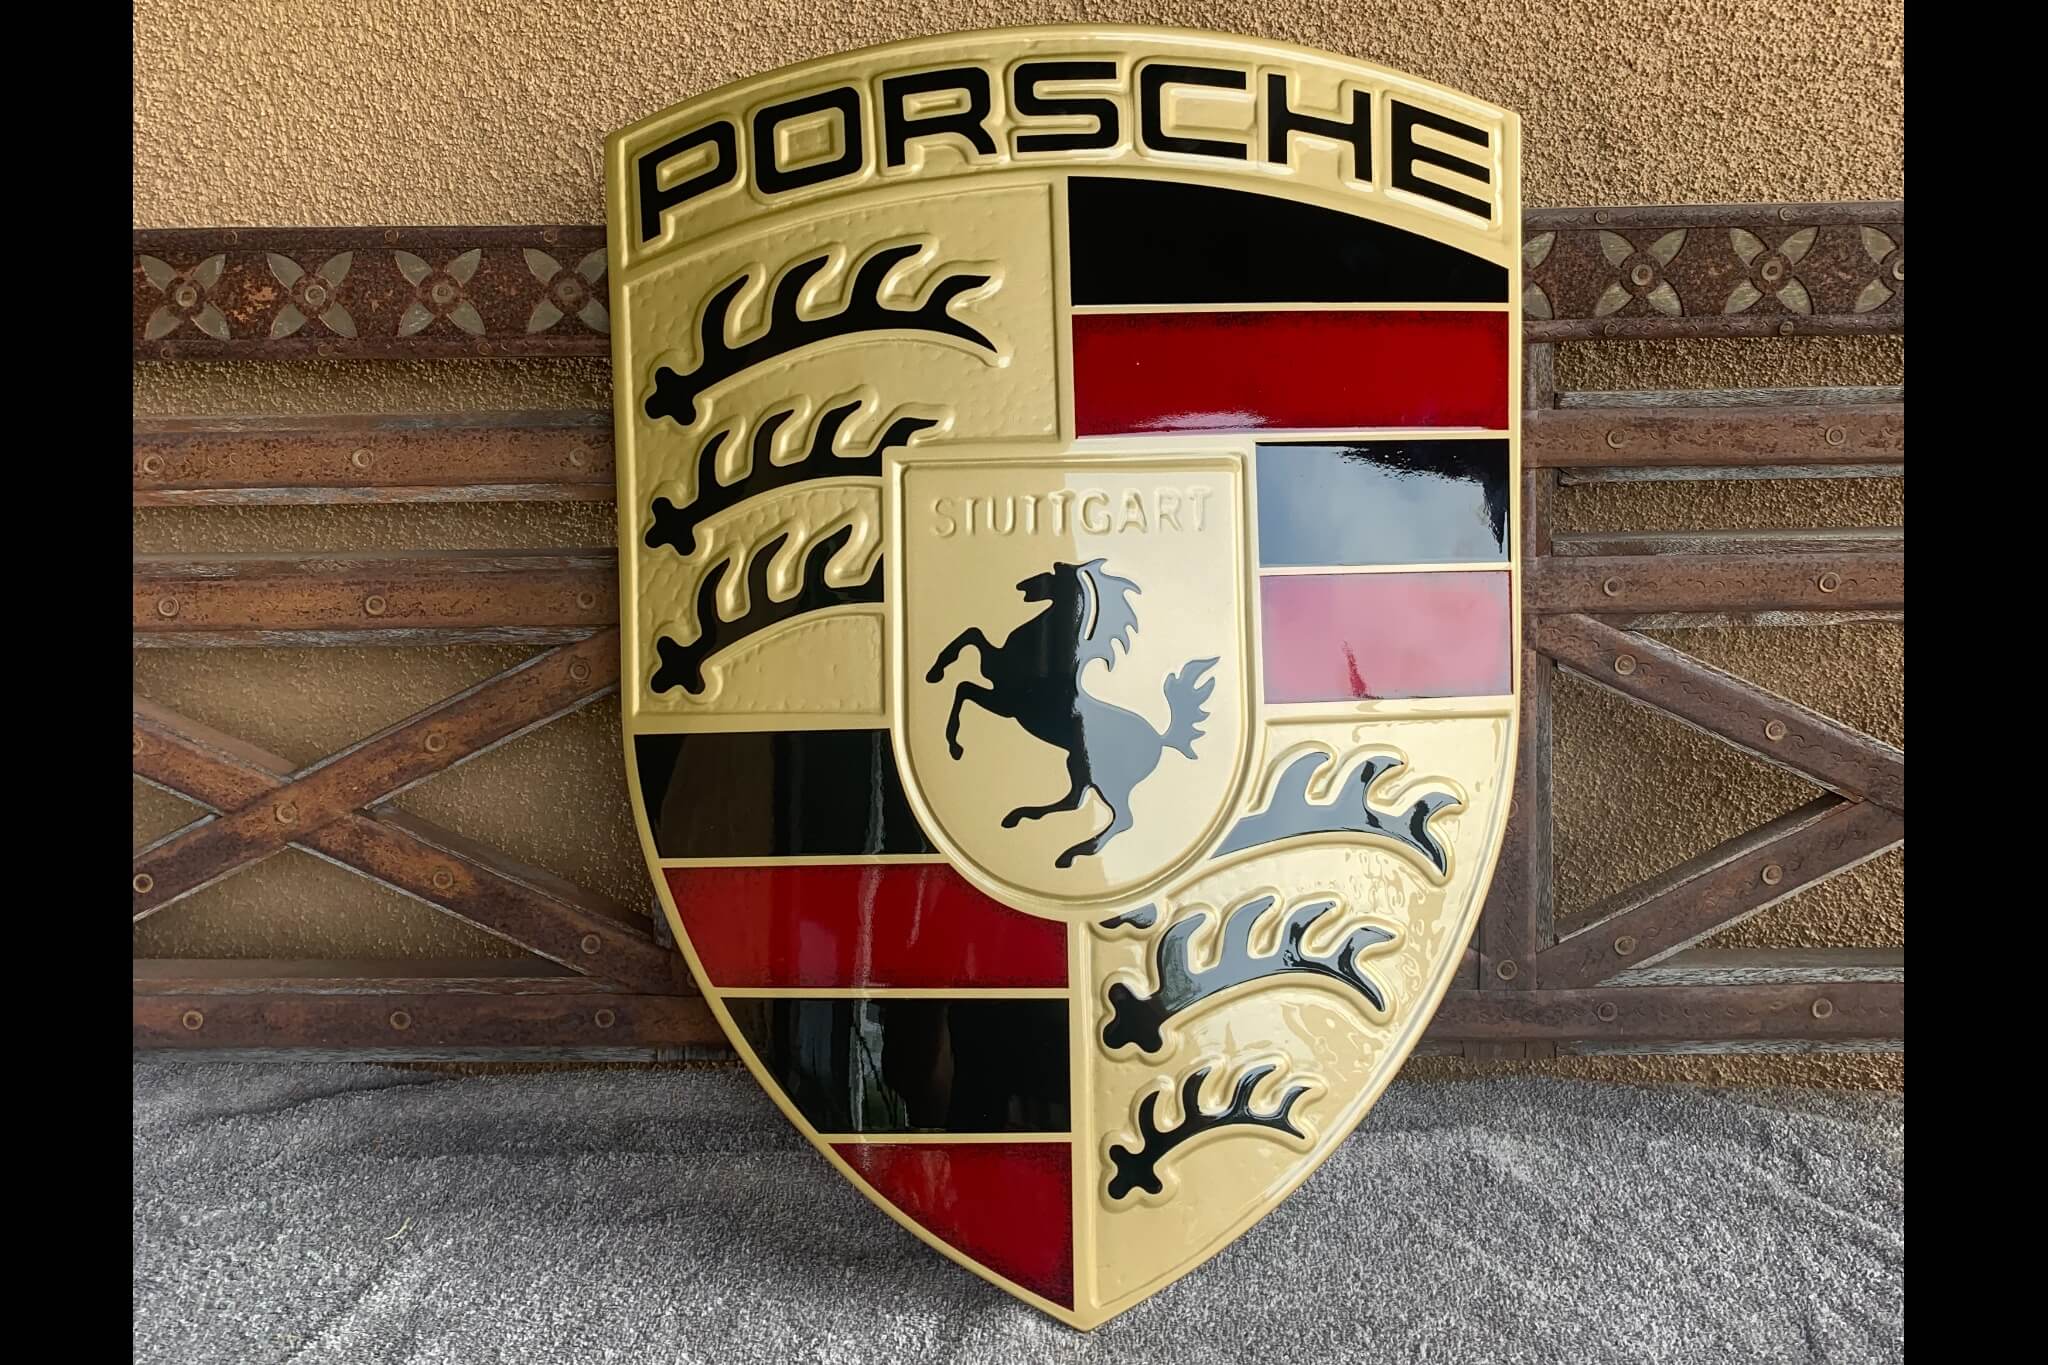  Authentic Porsche Dealership Crest